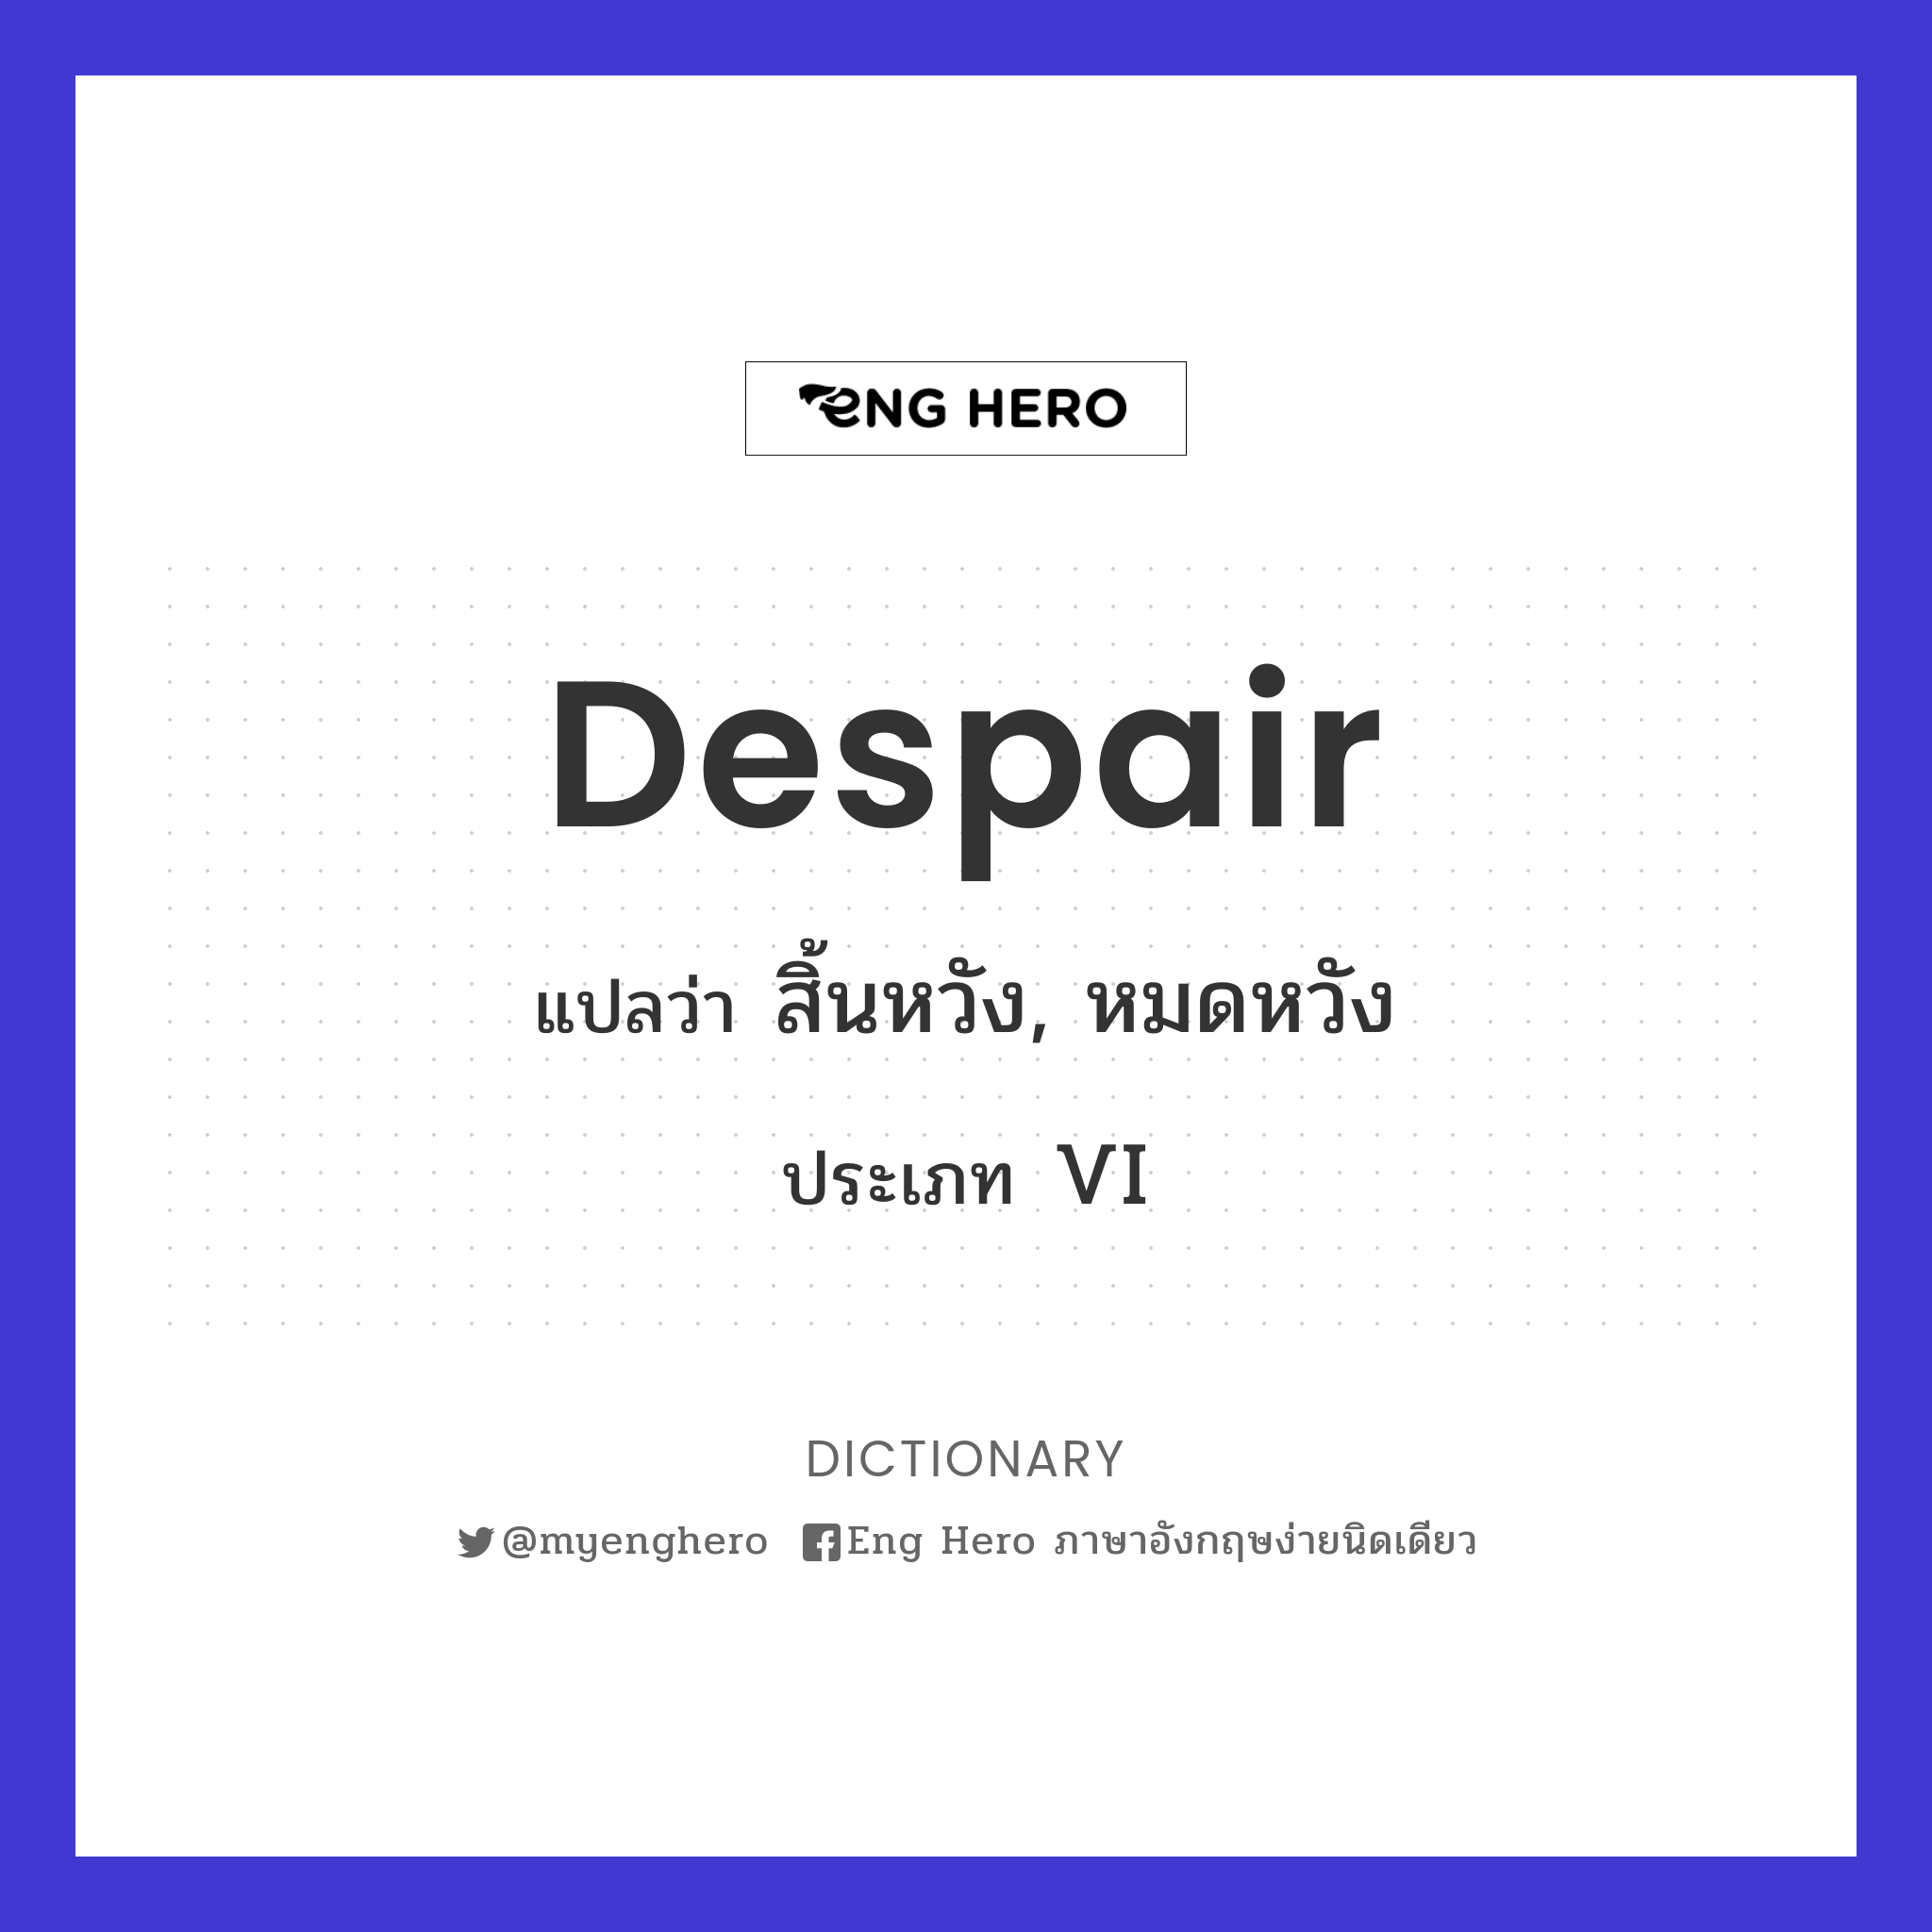 Despair แปลว่า สิ้นหวัง, หมดหวัง | Eng Hero เรียนภาษาอังกฤษ ออนไลน์ ฟรี